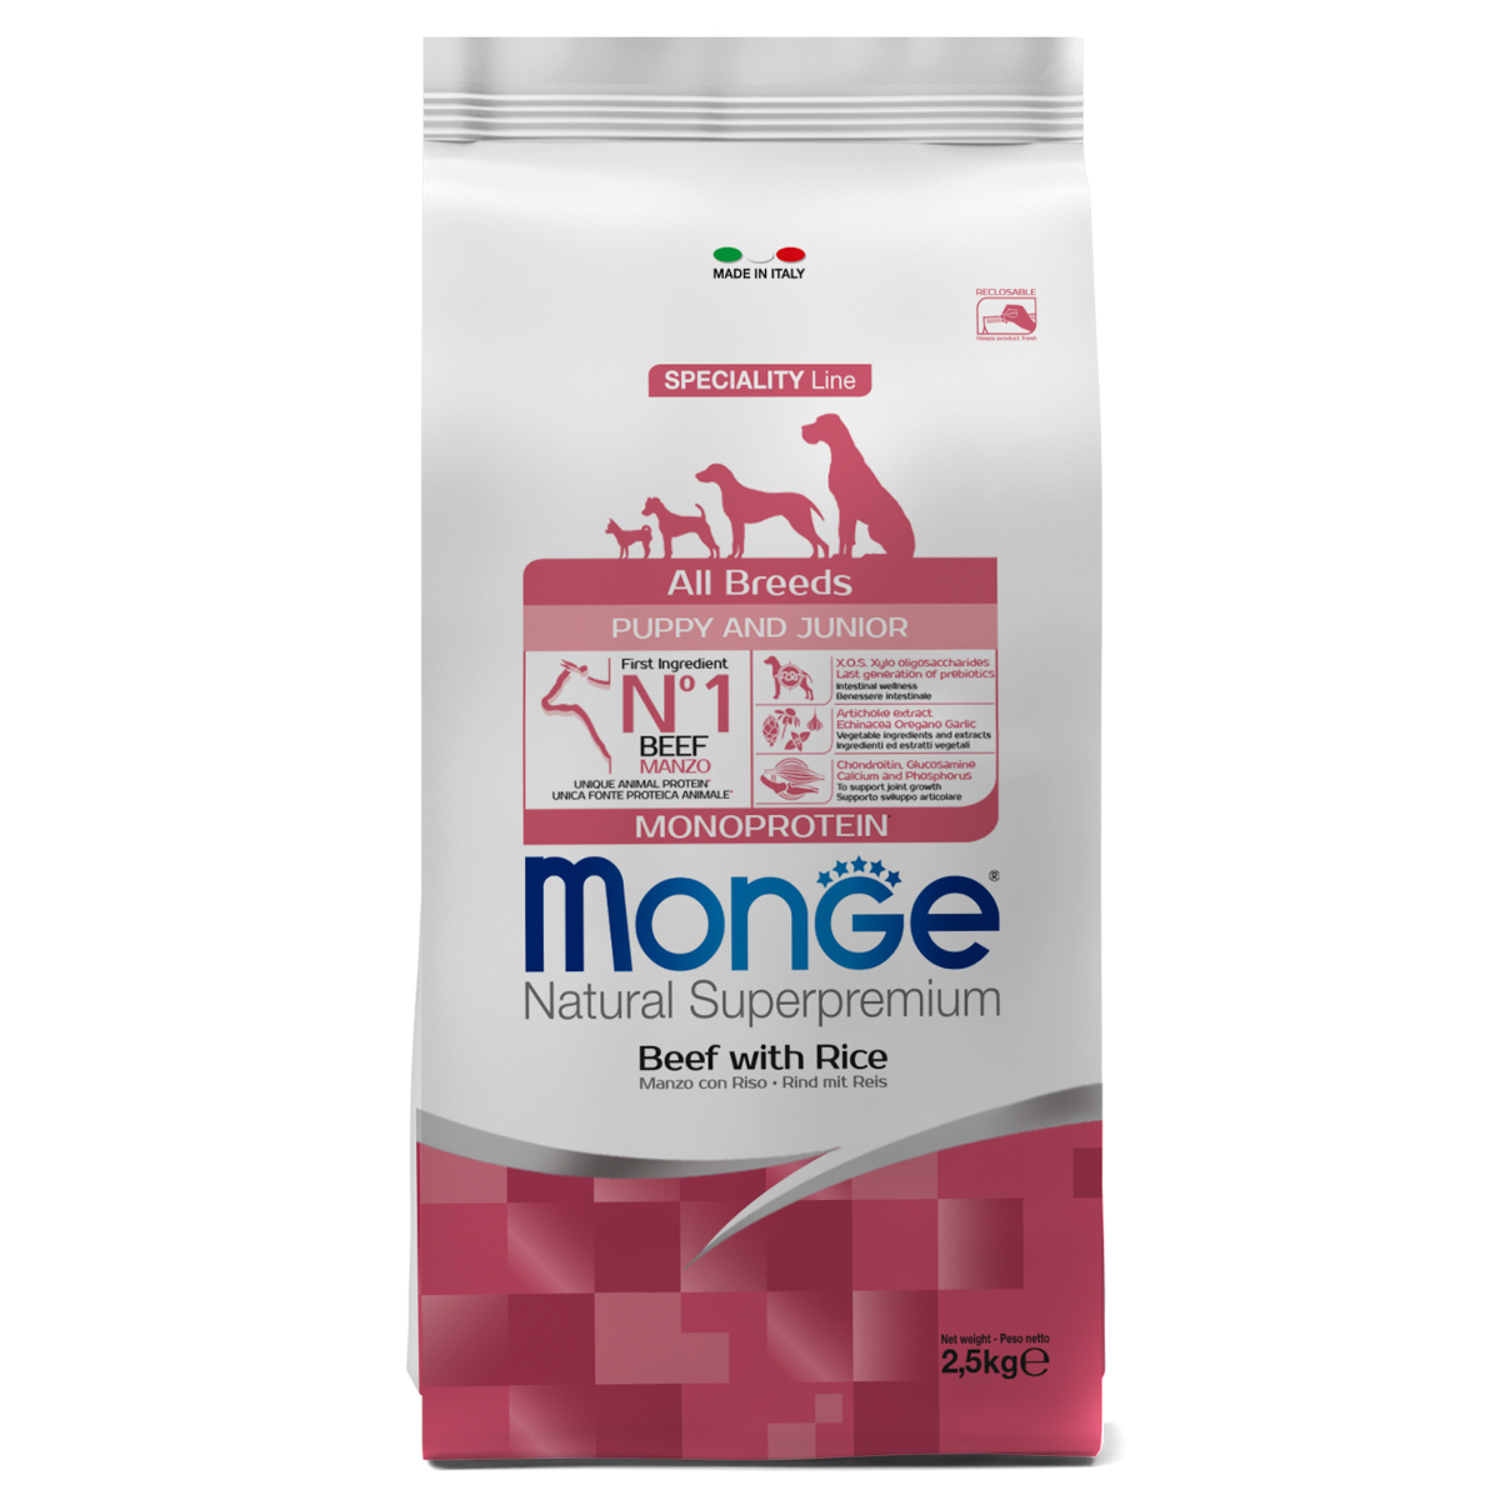 Сухой корм Monge Dog Speciality Line Monoprotein Puppy & Junior корм для щенков всех пород, из говядины с рисом 2,5 кг